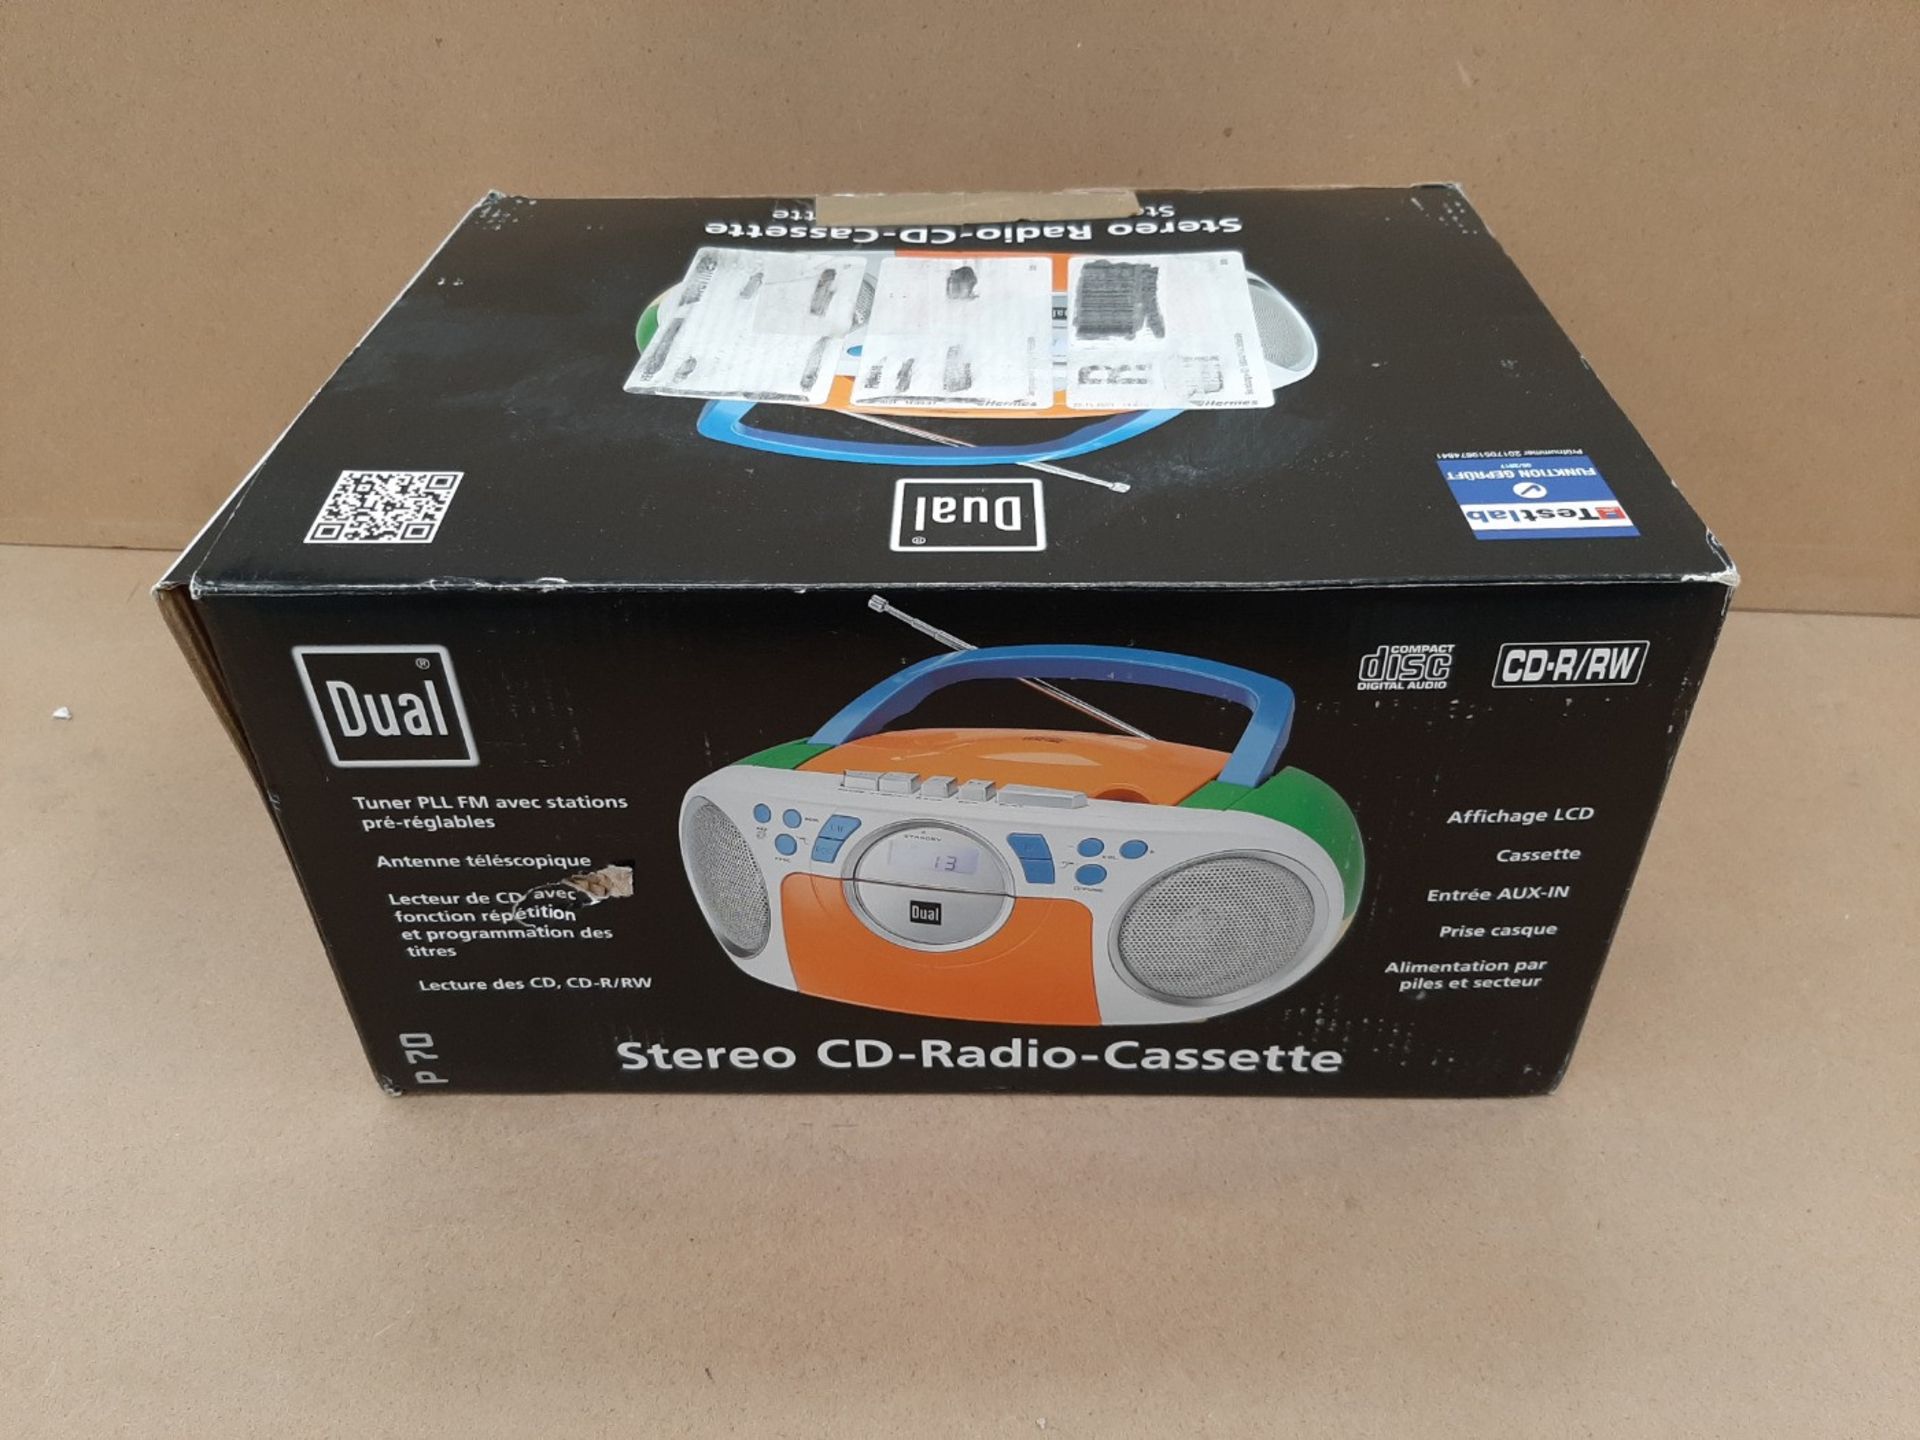 Dual 74865 P 70 Cassette radio - Image 2 of 3